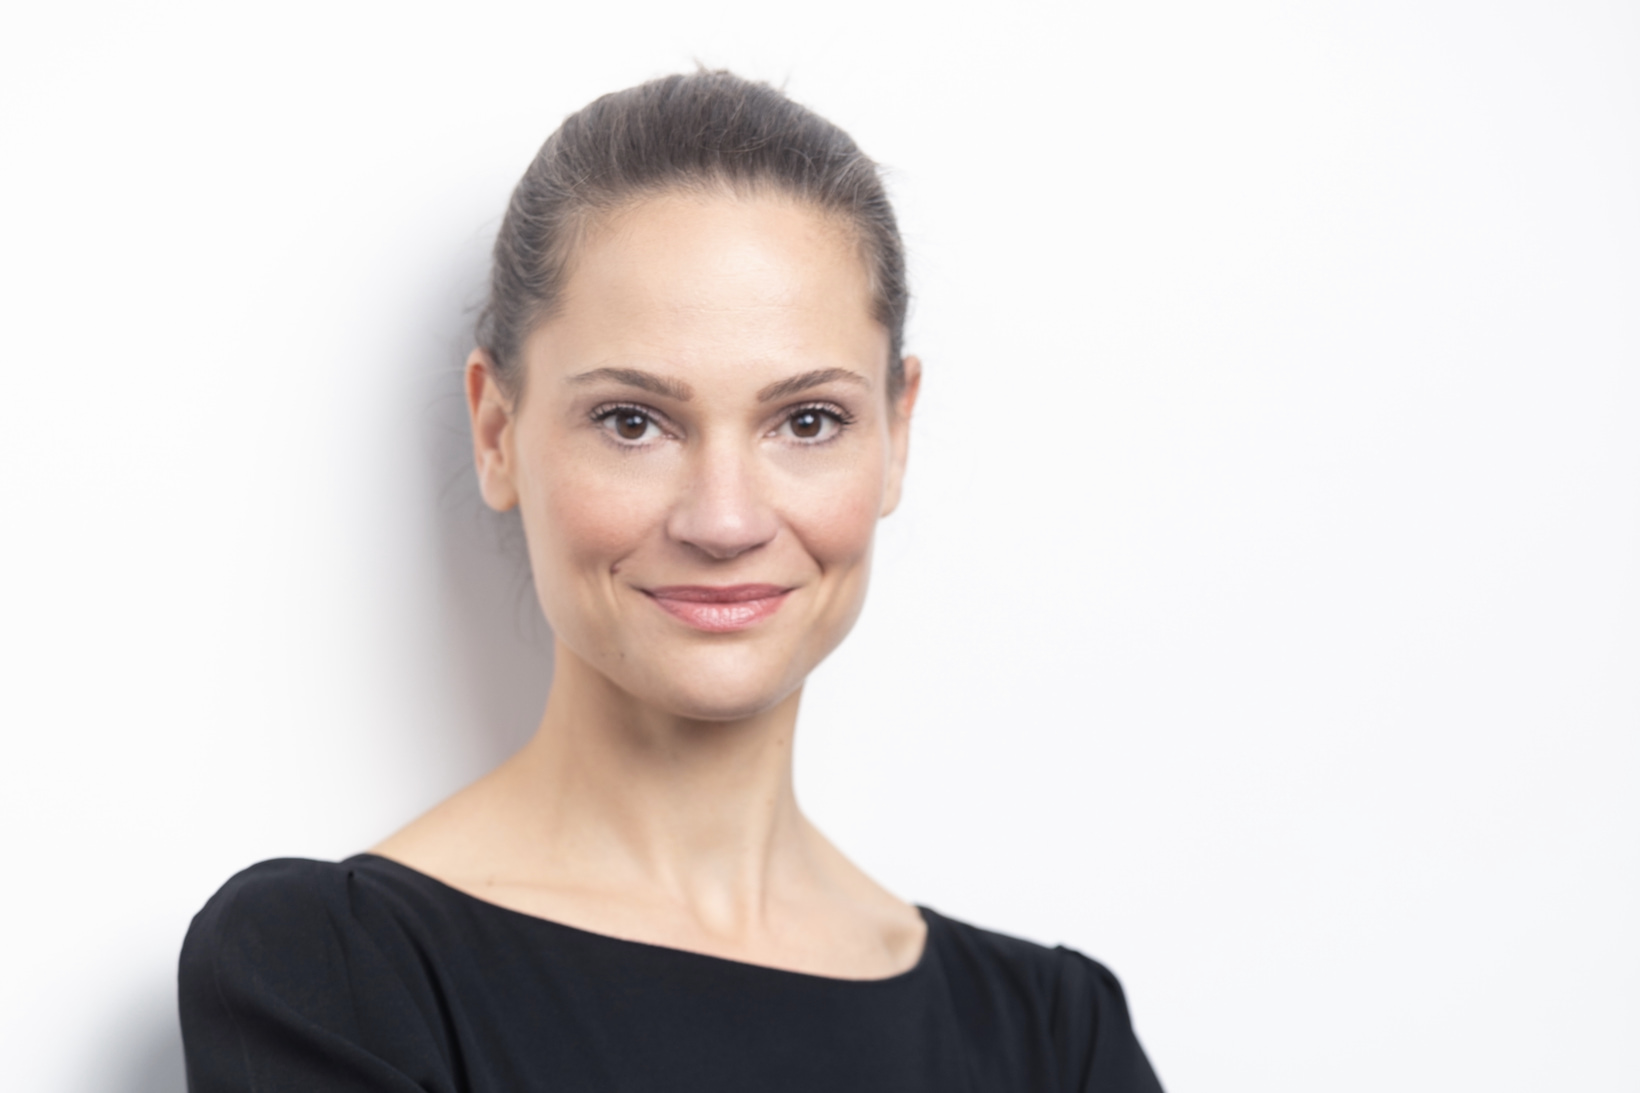 Prof. Dr. Anna Schneider – Fachbereich Wirtschaft der Hochschule Trier. Verantwortlich für den Studiengang Wirtschaftspsychologie